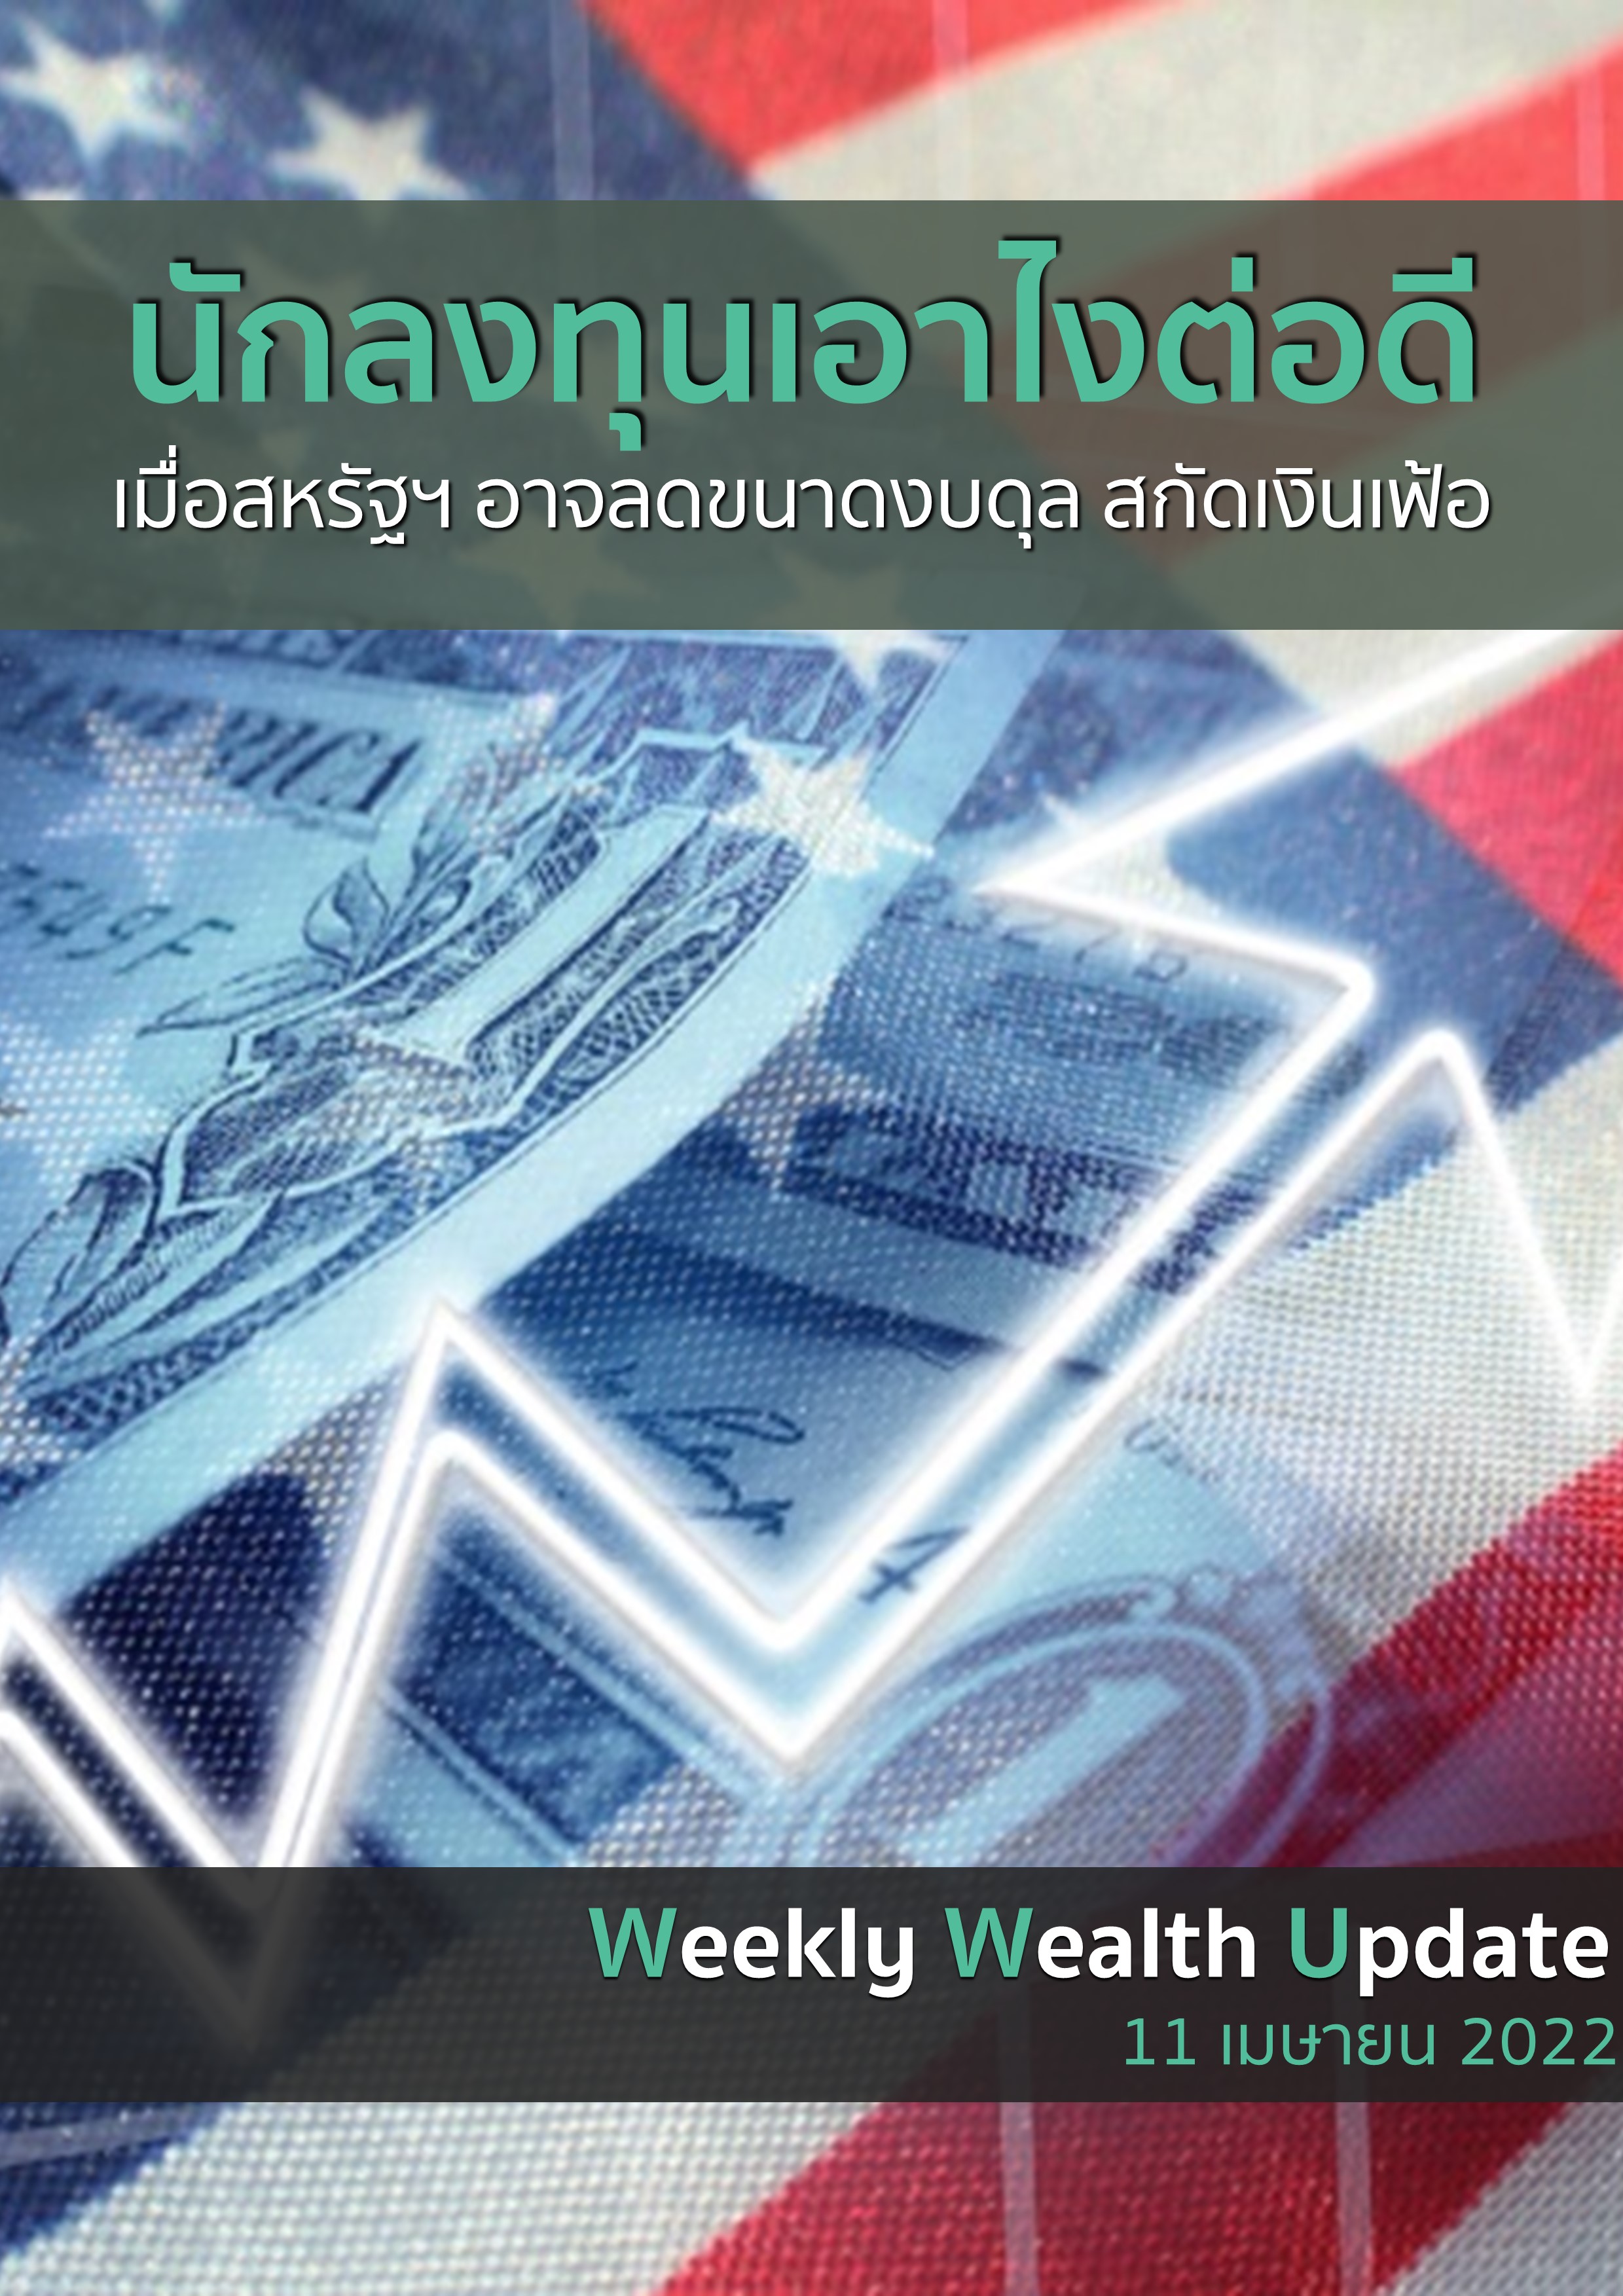 https://www.kasikornbank.com/th/k-expert/knowledge/e-magazine/PublishingImages/fed-reduce-money-inflation.jpeg